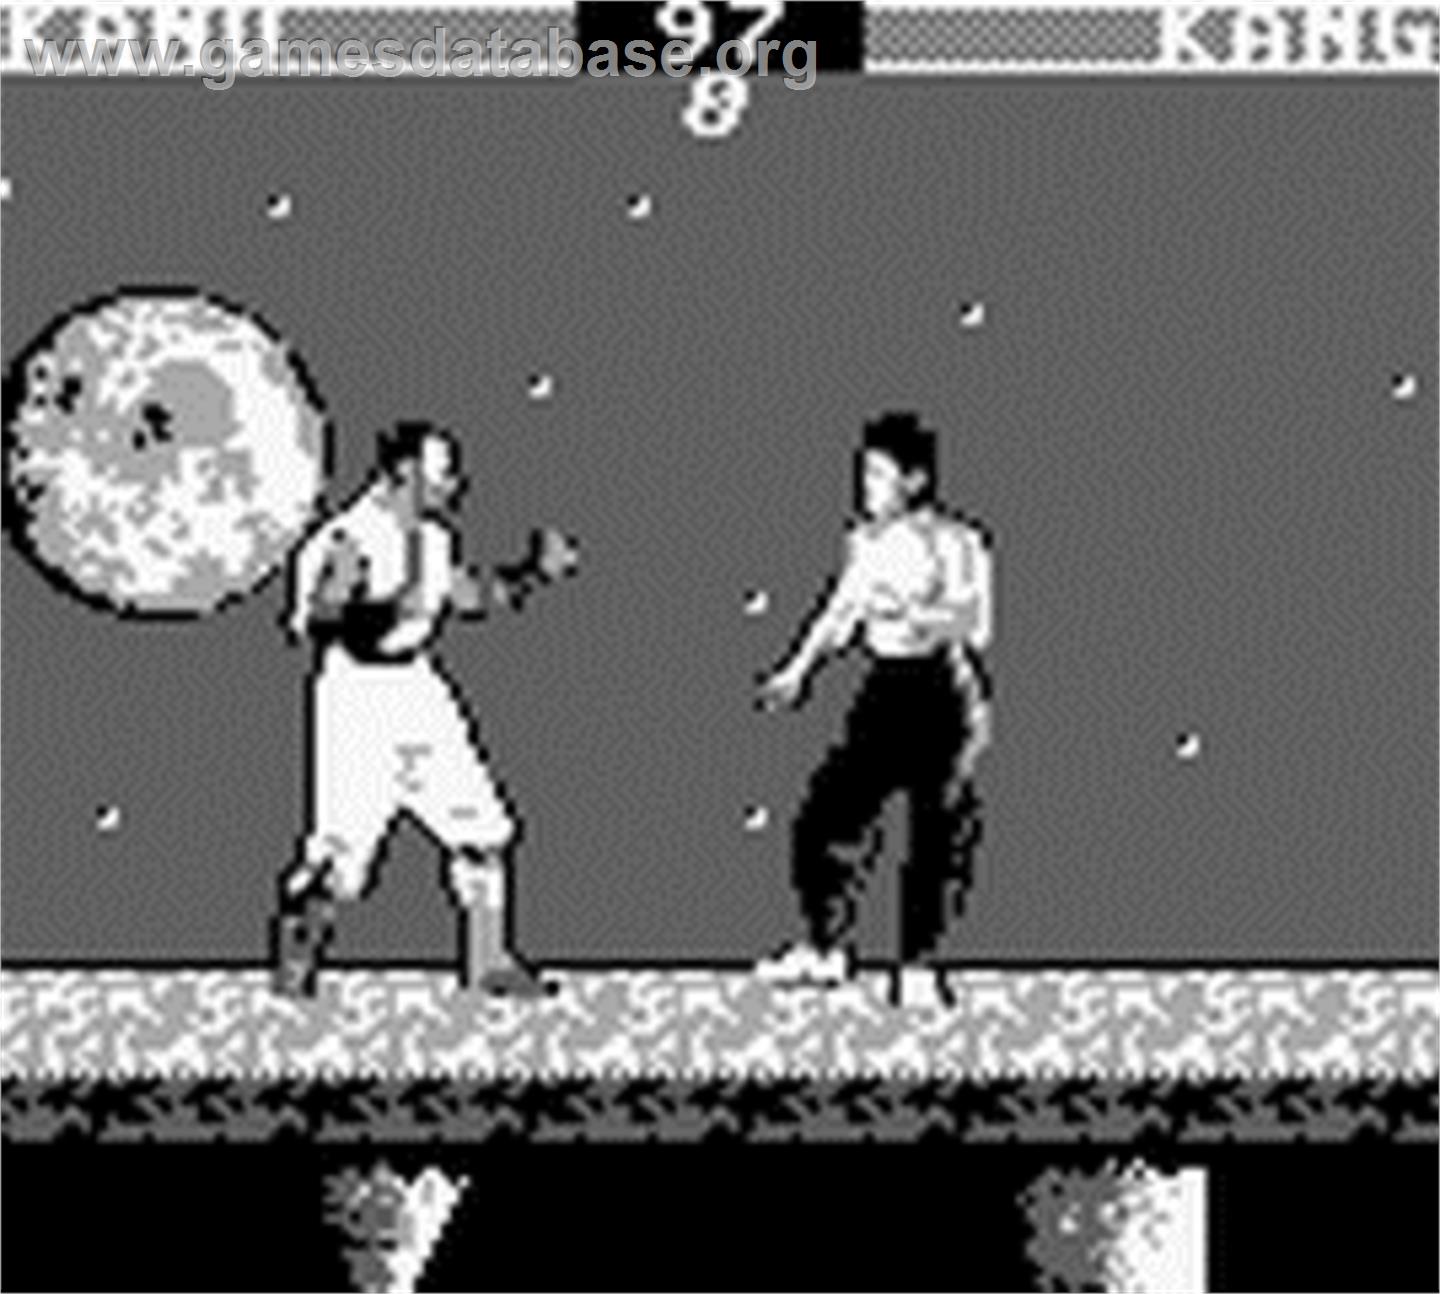 Mortal Kombat - Nintendo Game Boy - Artwork - In Game